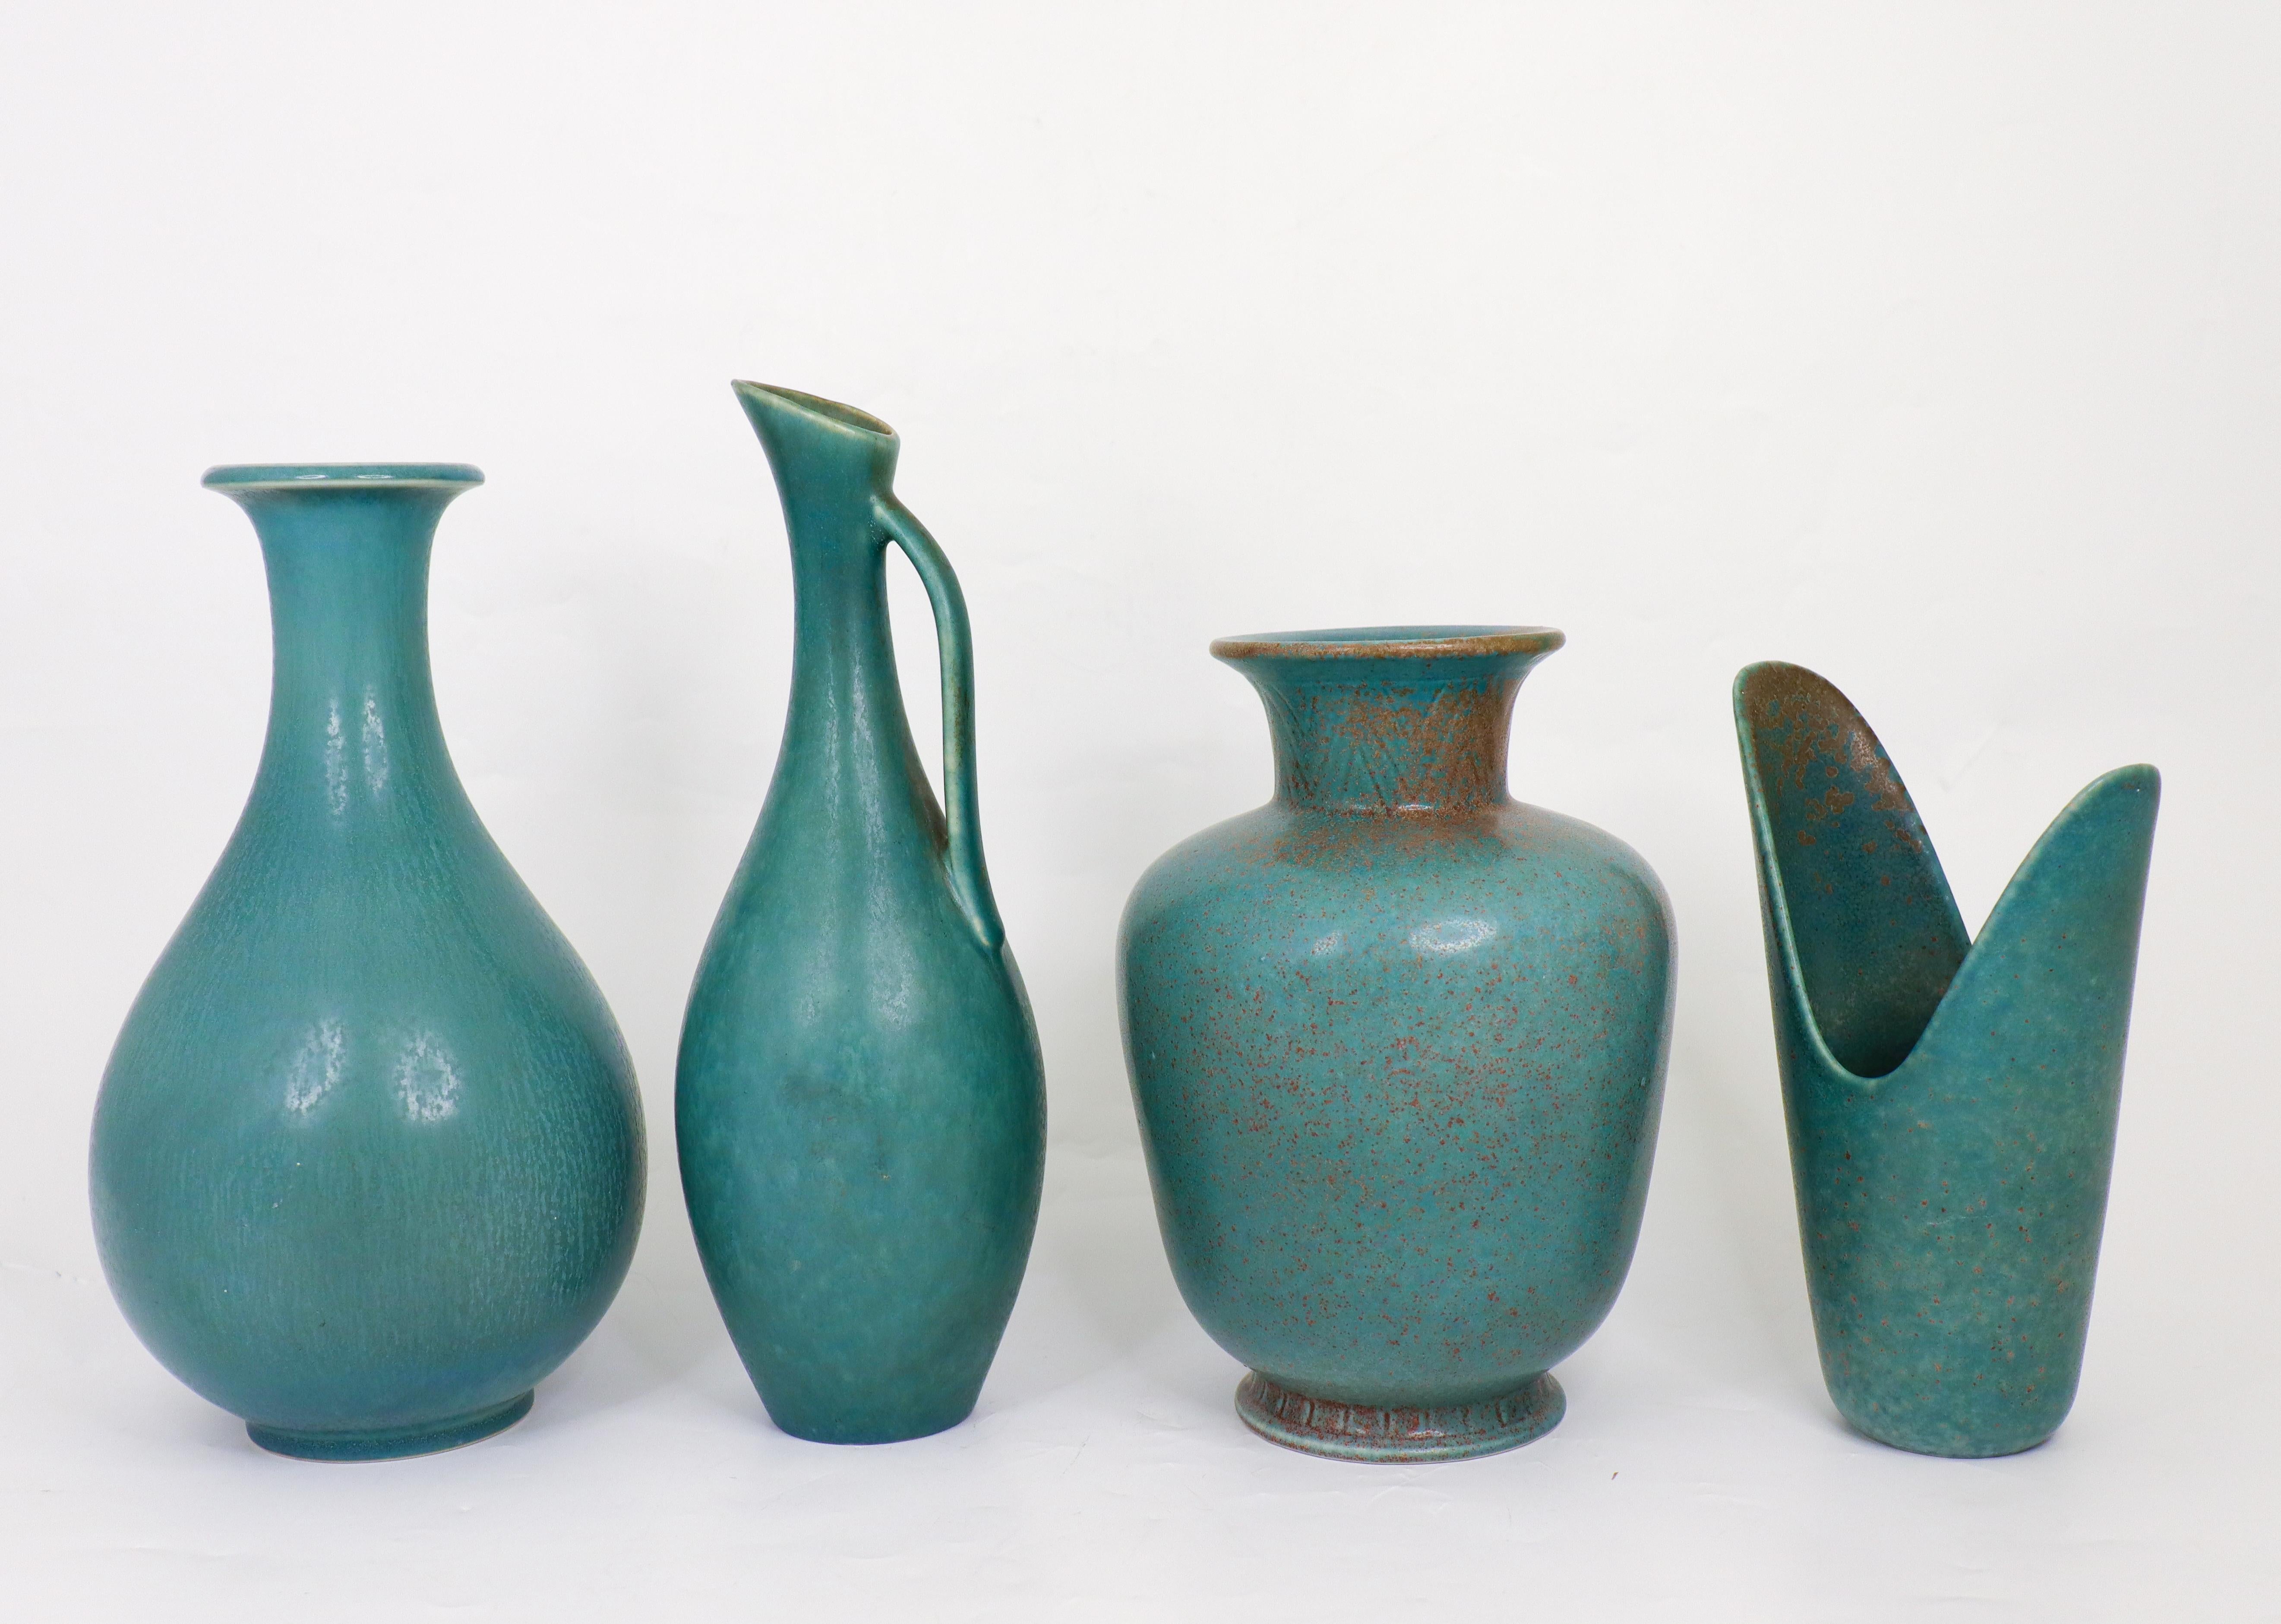 Eine Gruppe von vier Vasen mit einer wunderschönen Glasur, entworfen von Gunnar Nylund bei Rörstrand in den 1950er Jahren. Die Vasen sind zwischen 18,5 und 26 cm hoch und in ausgezeichnetem Zustand. Sie sind alle als 1. Qualität gekennzeichnet.